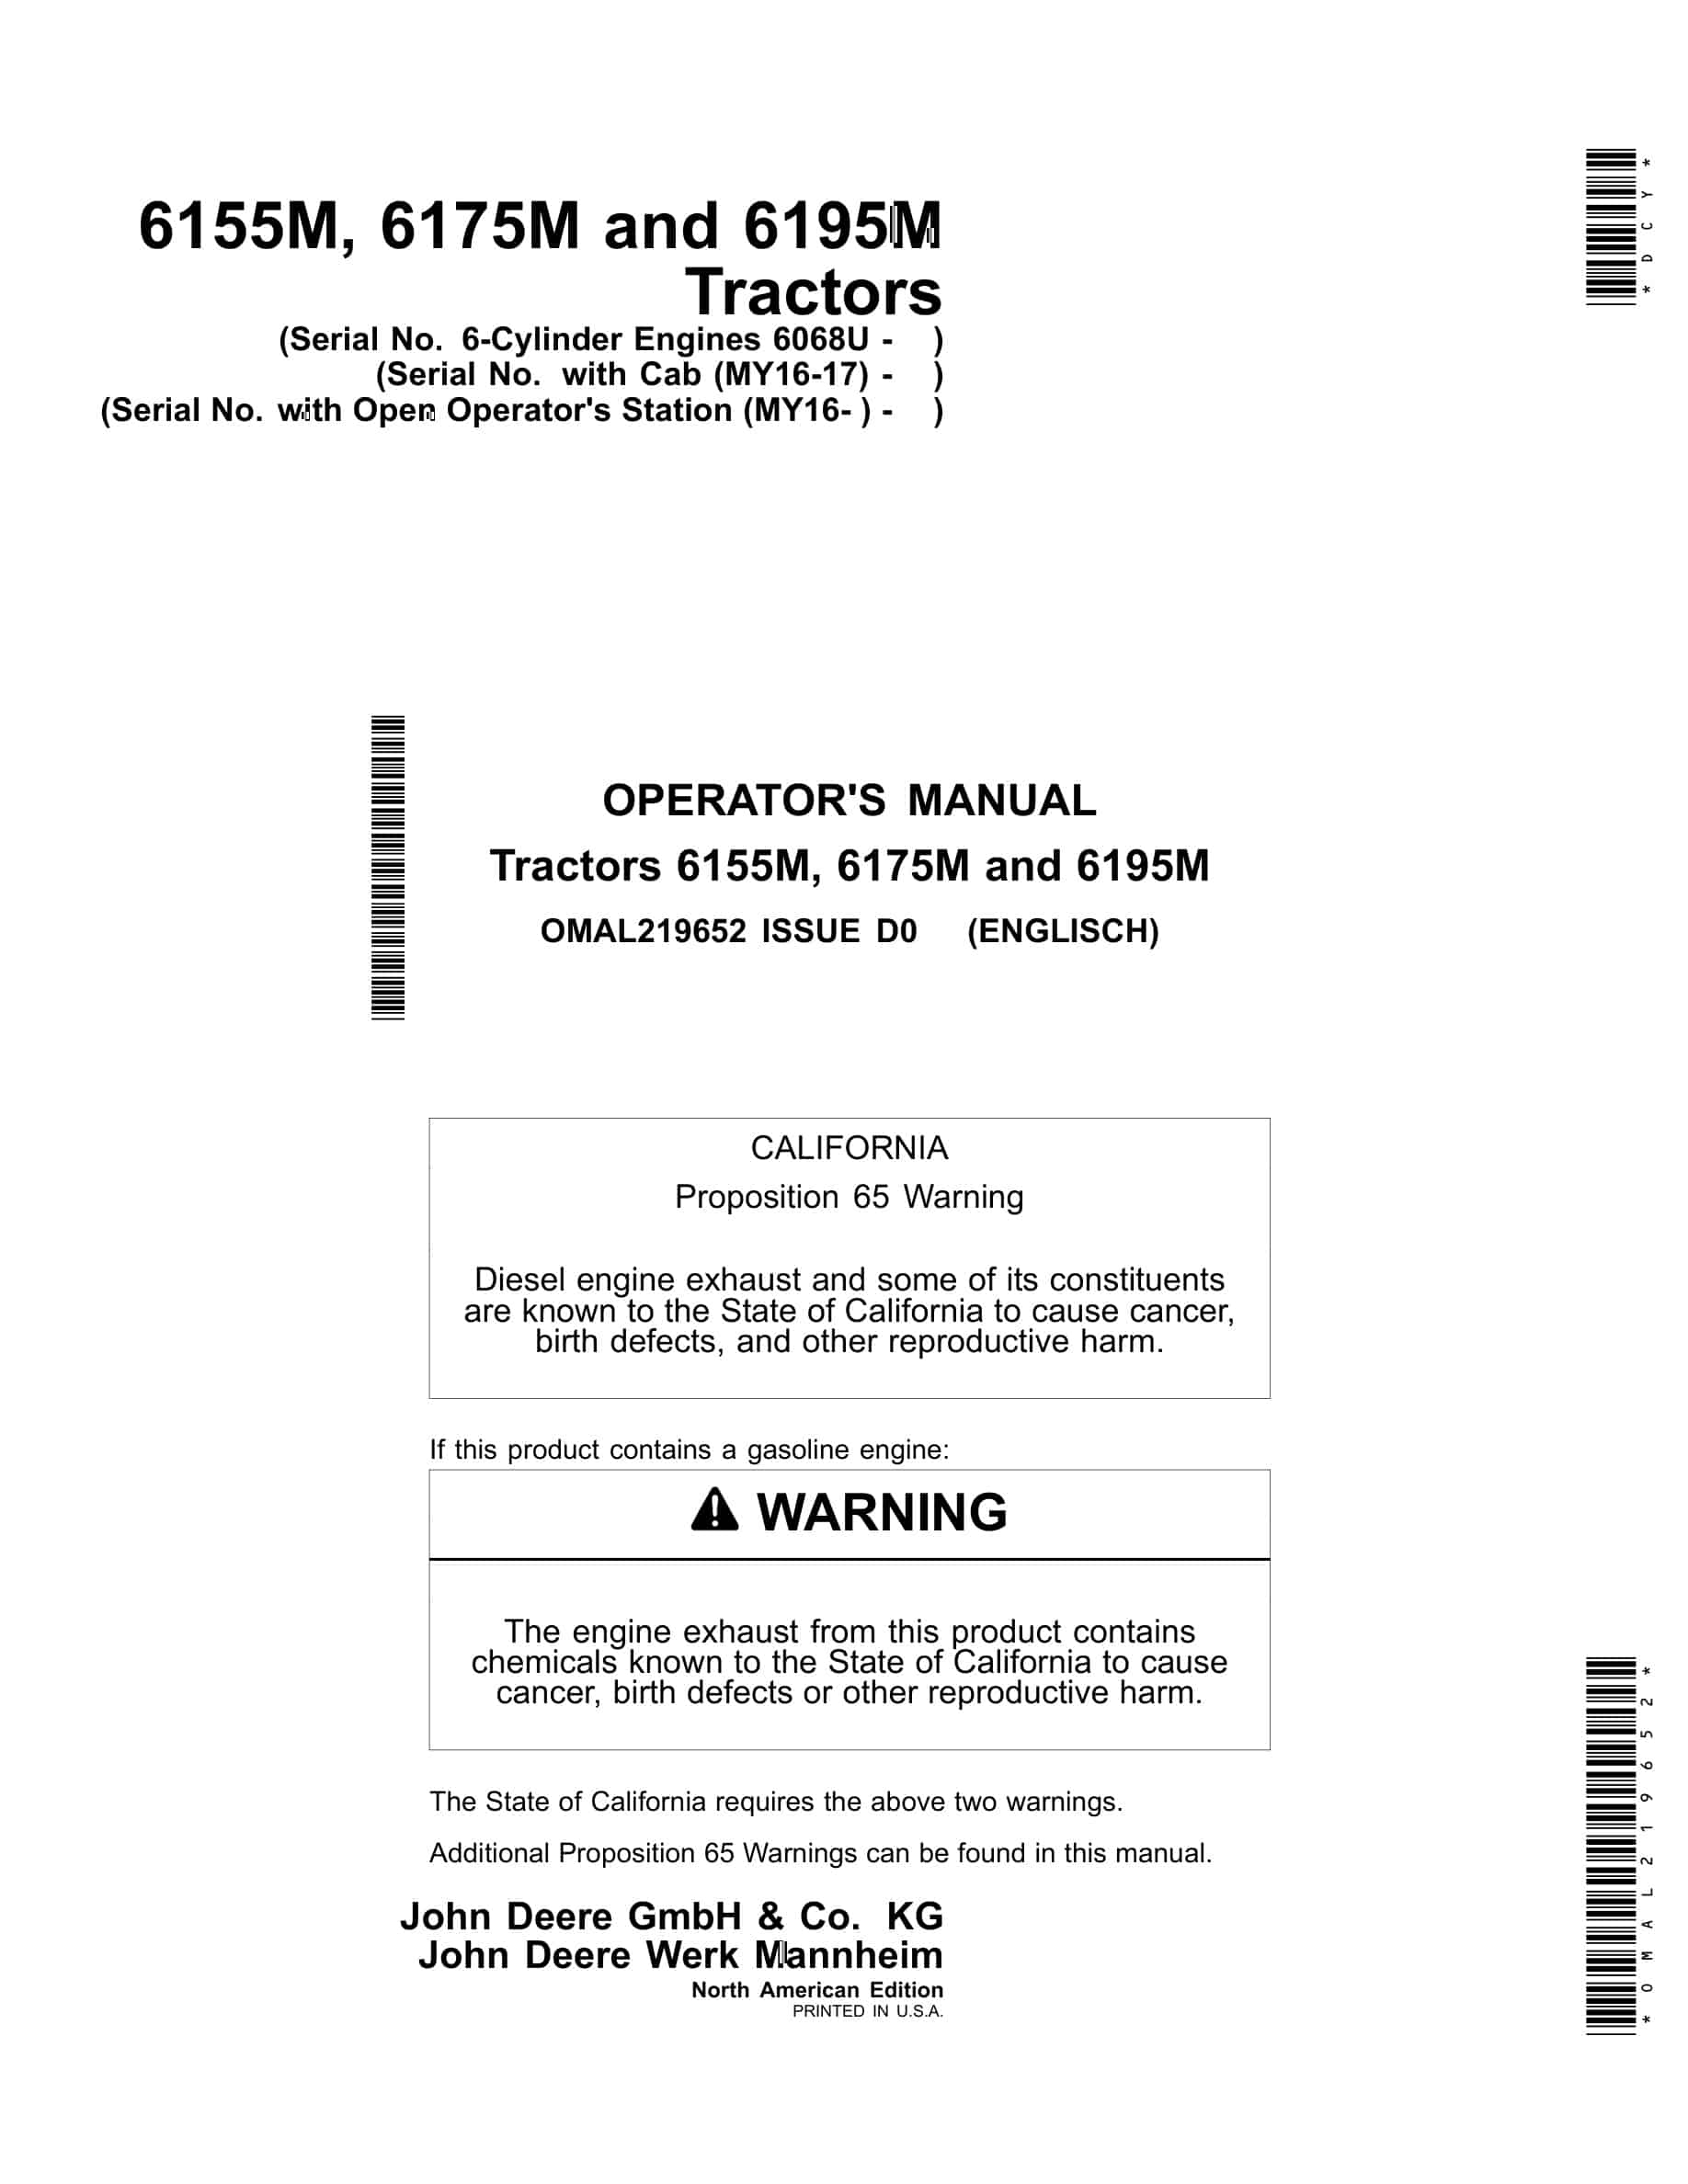 John Deere 6155M, 6175M and 6195M Tractor Operator Manual OMAL219652-1